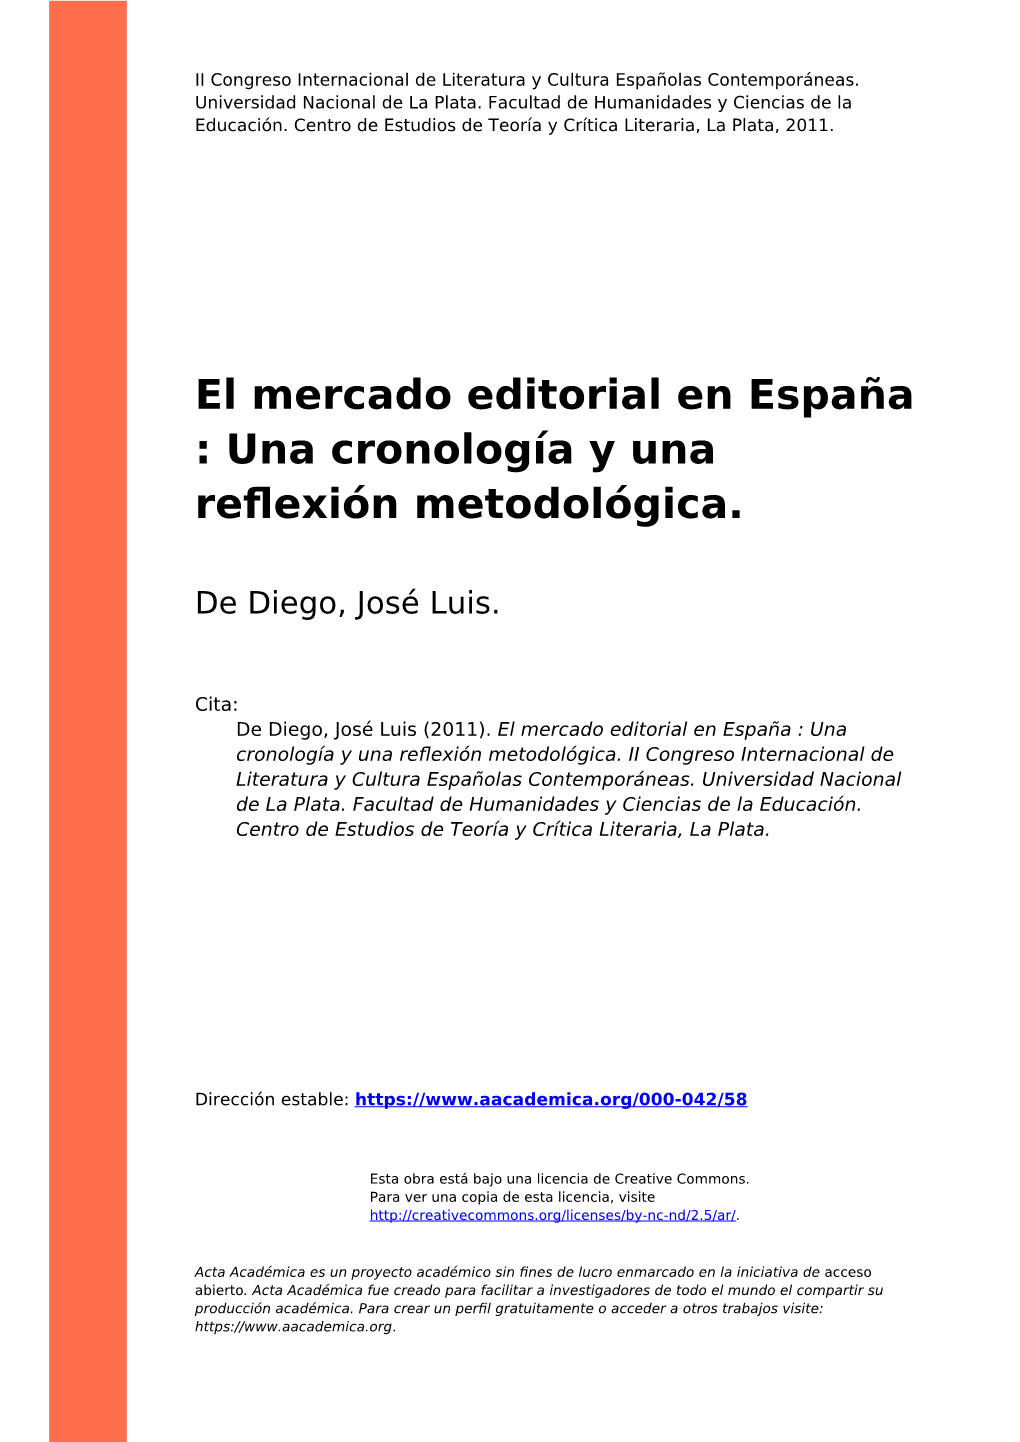 El Mercado Editorial En España : Una Cronología Y Una Reflexión